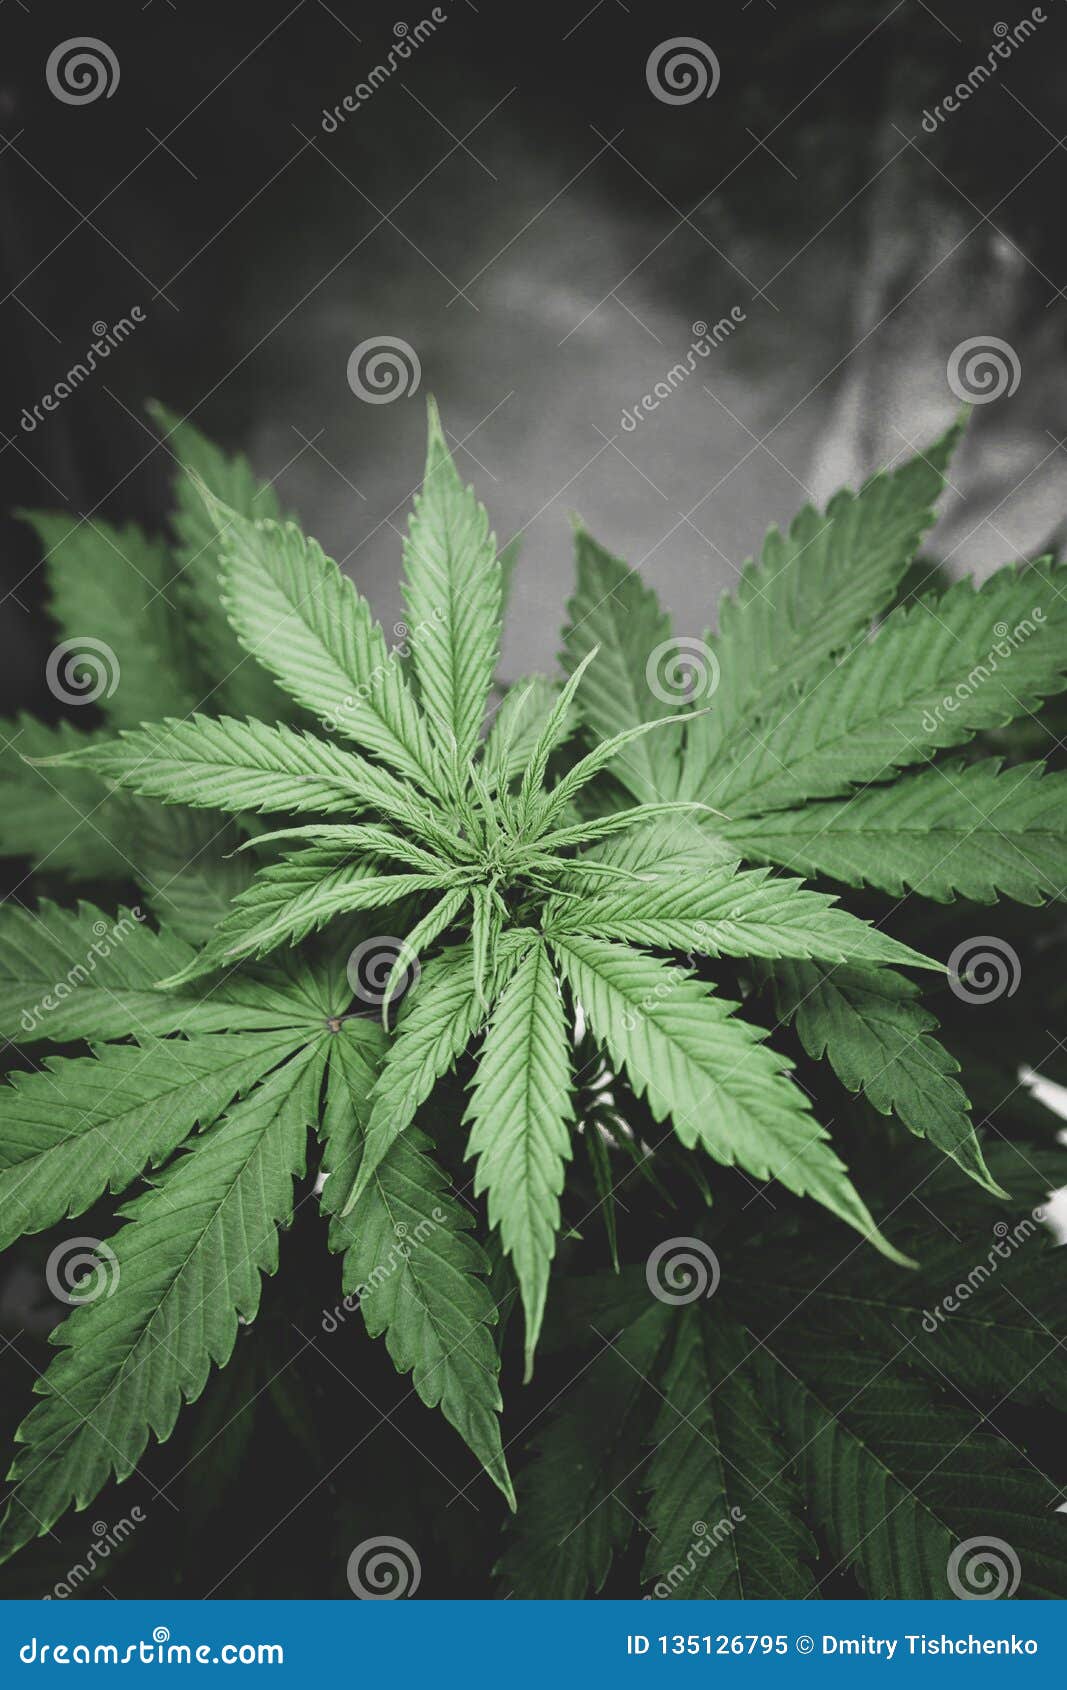 Цветок марихуаны фото как купить марихуану краснодаре